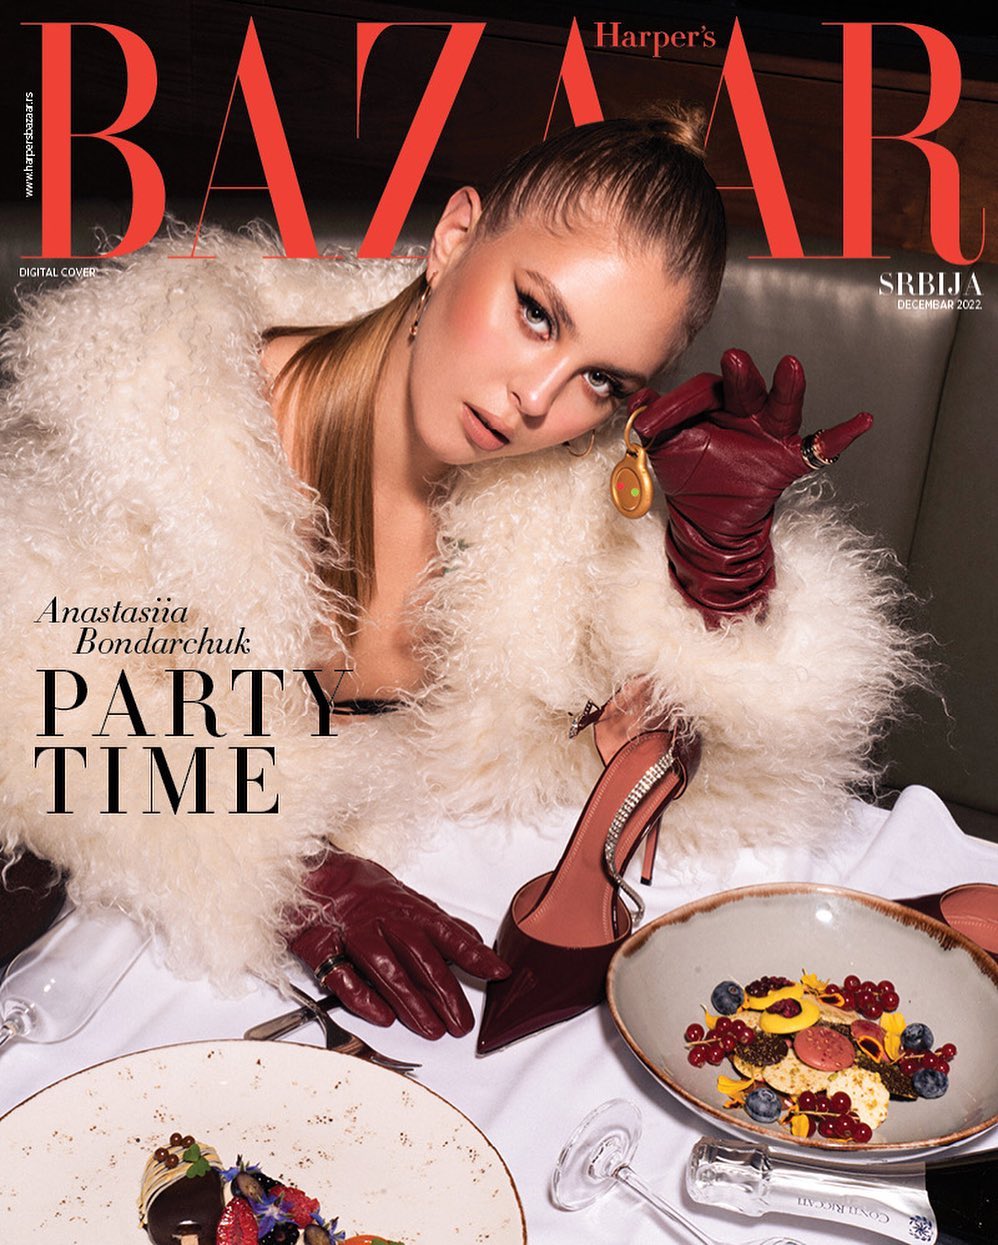 На обложке Harper's Bazaar появился Gadget 88 креатора Саргиса Саргсяна и украинская модель Анастасия Бондарчук